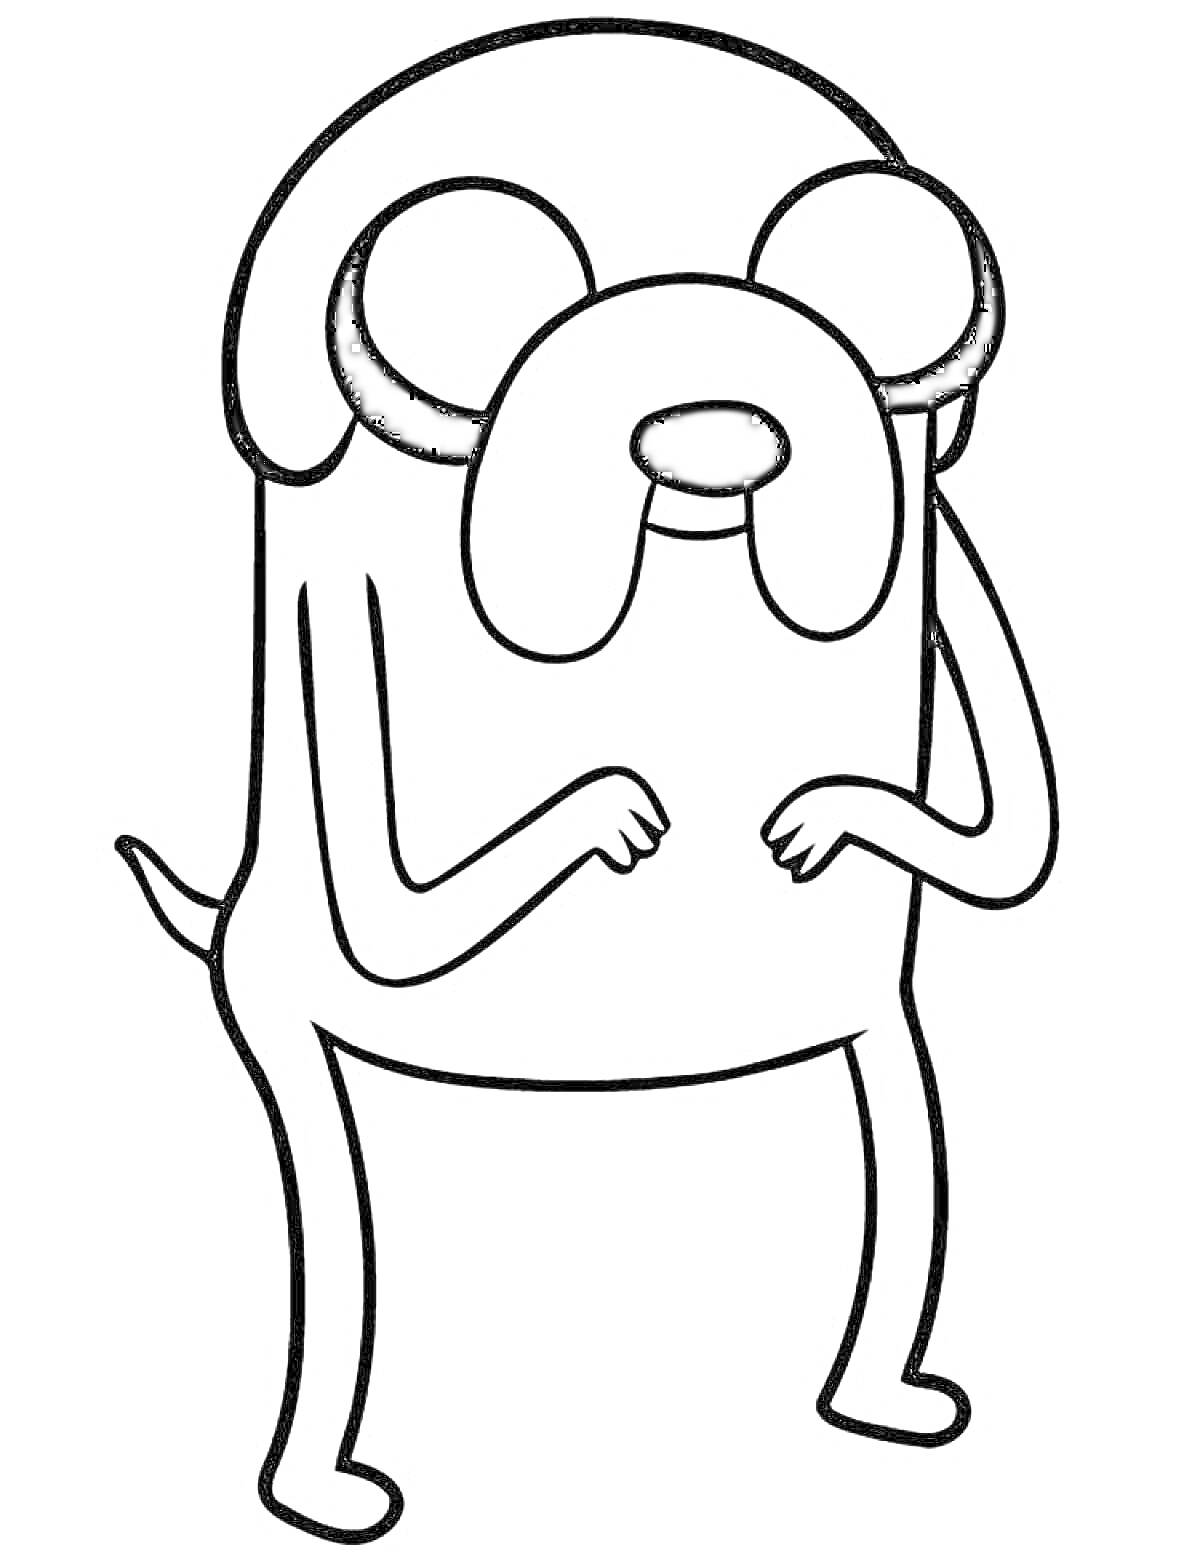 Раскраска Раскраска с антропоморфной собакой с большими глазами и ушами, стоящей на задних лапах